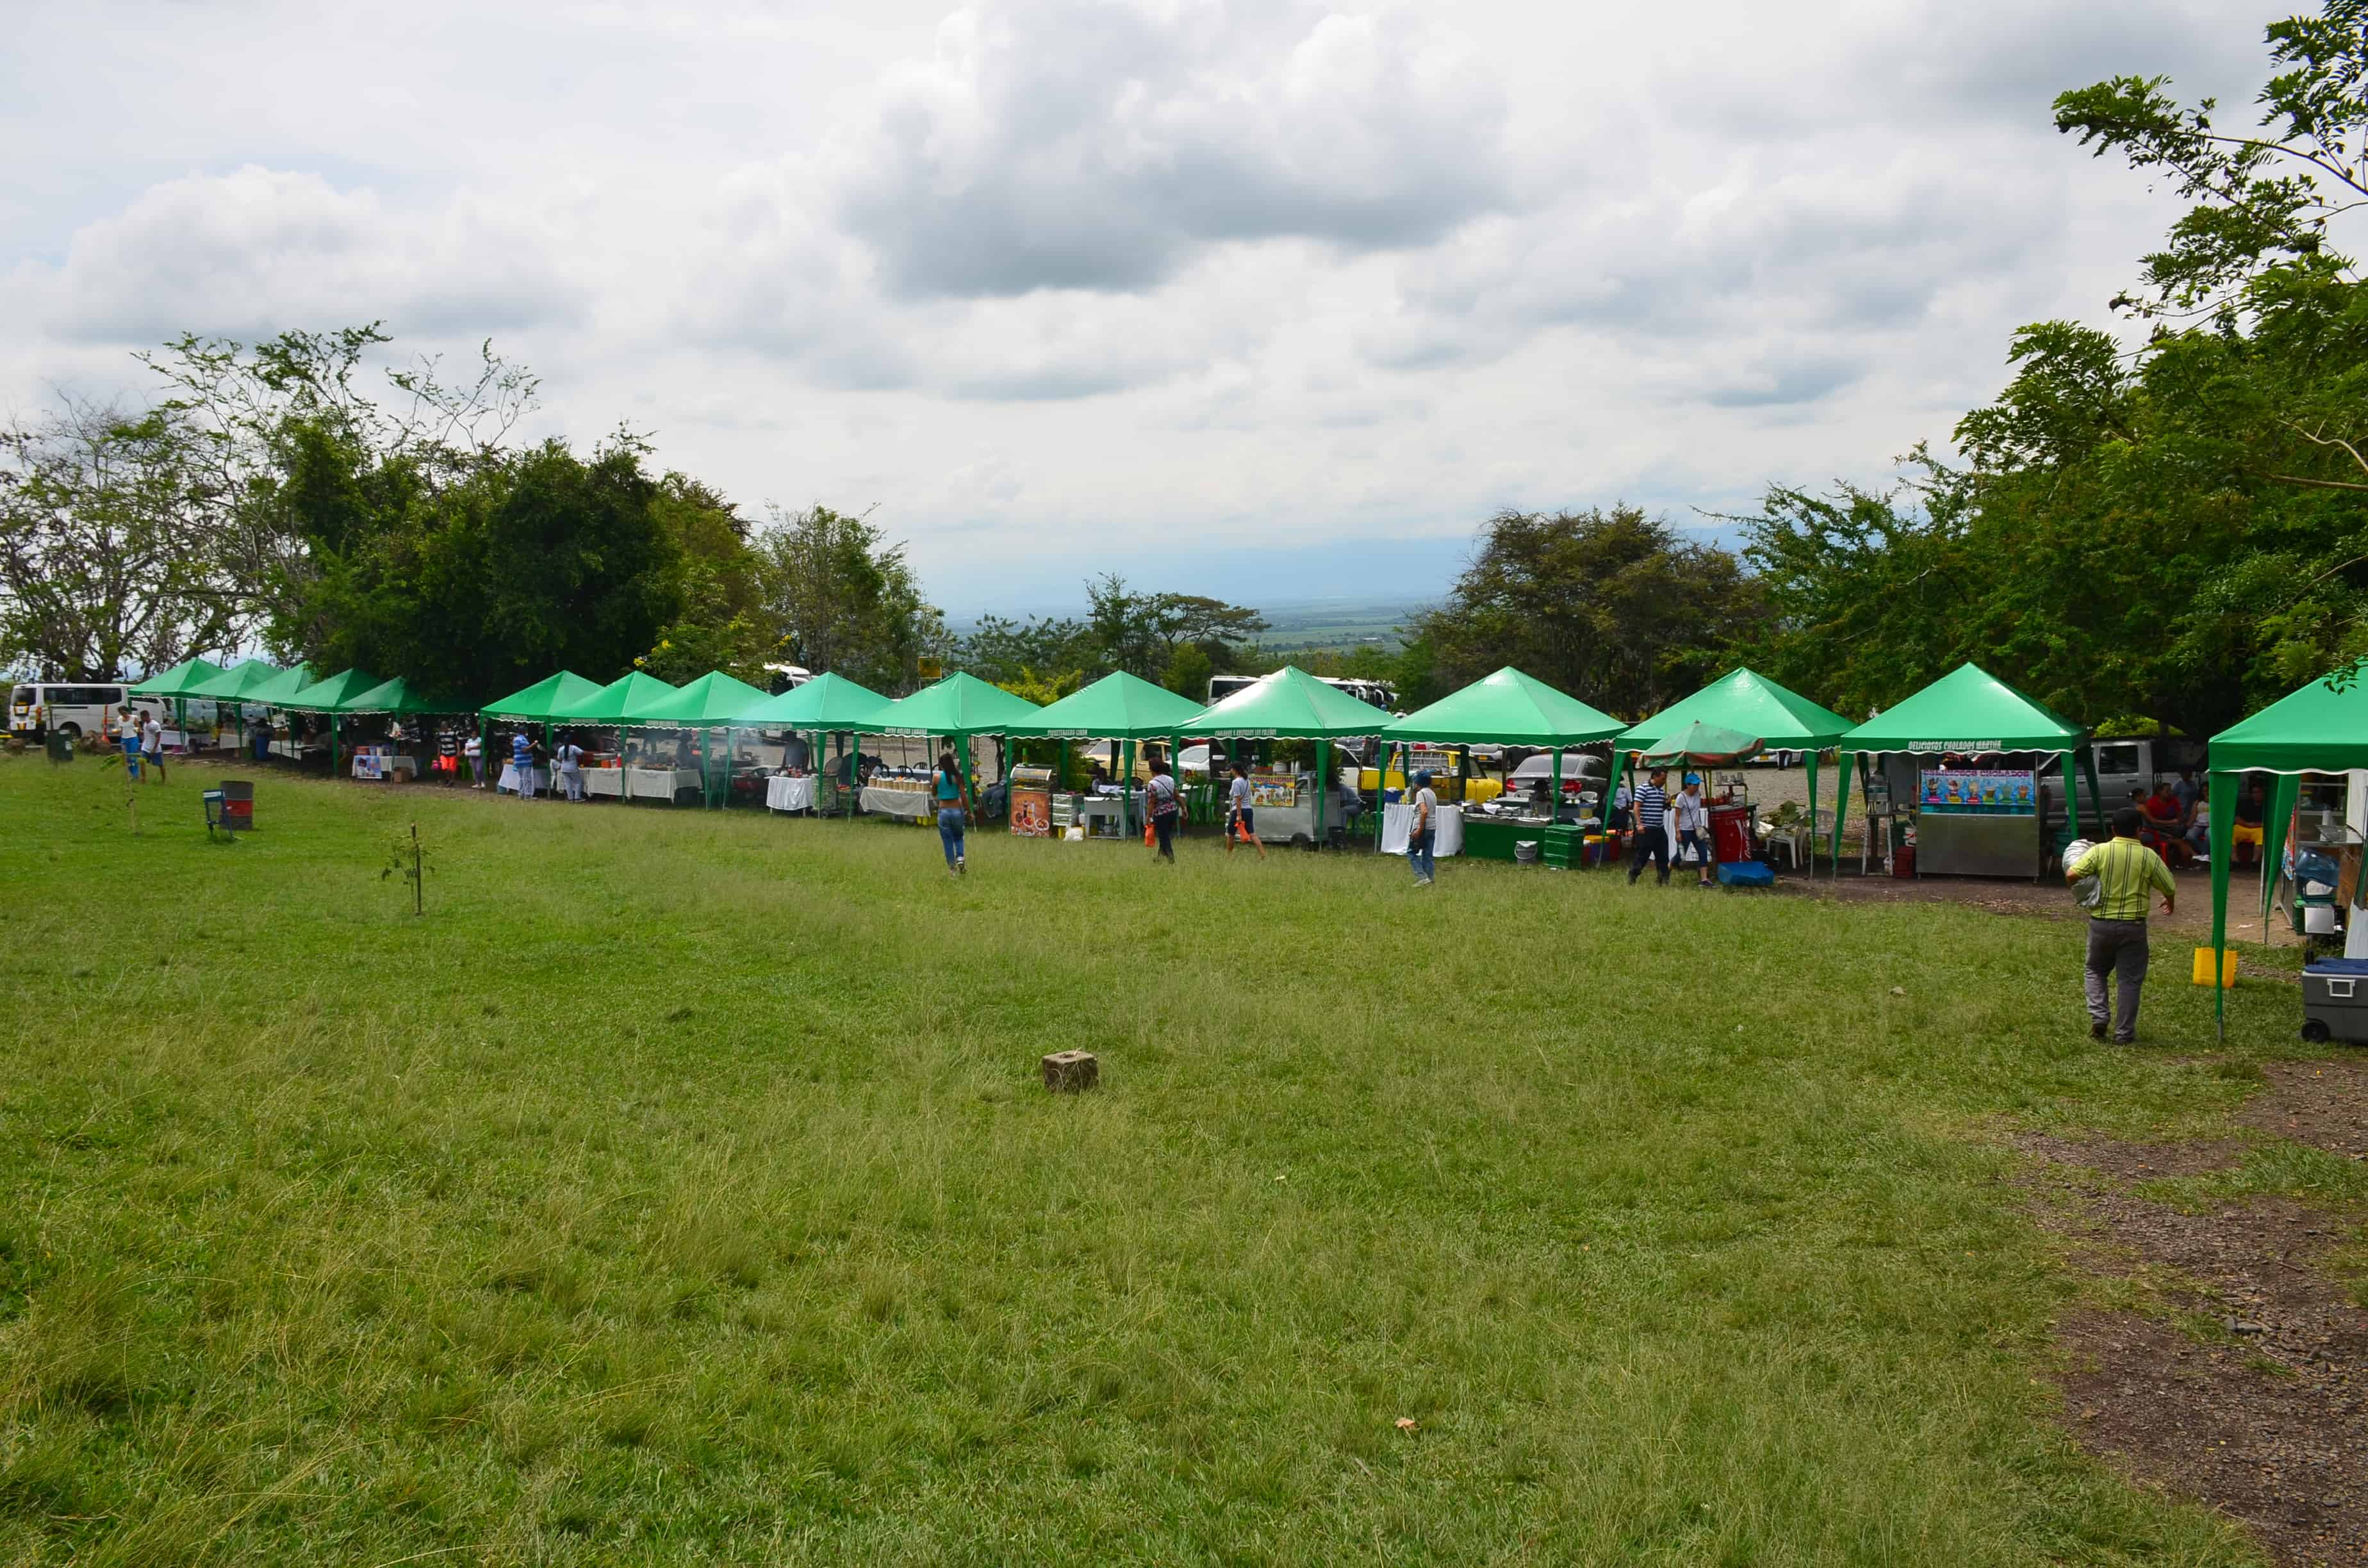 Hostal del Piedemonte at Hacienda El Paraíso in Valle del Cauca, Colombia